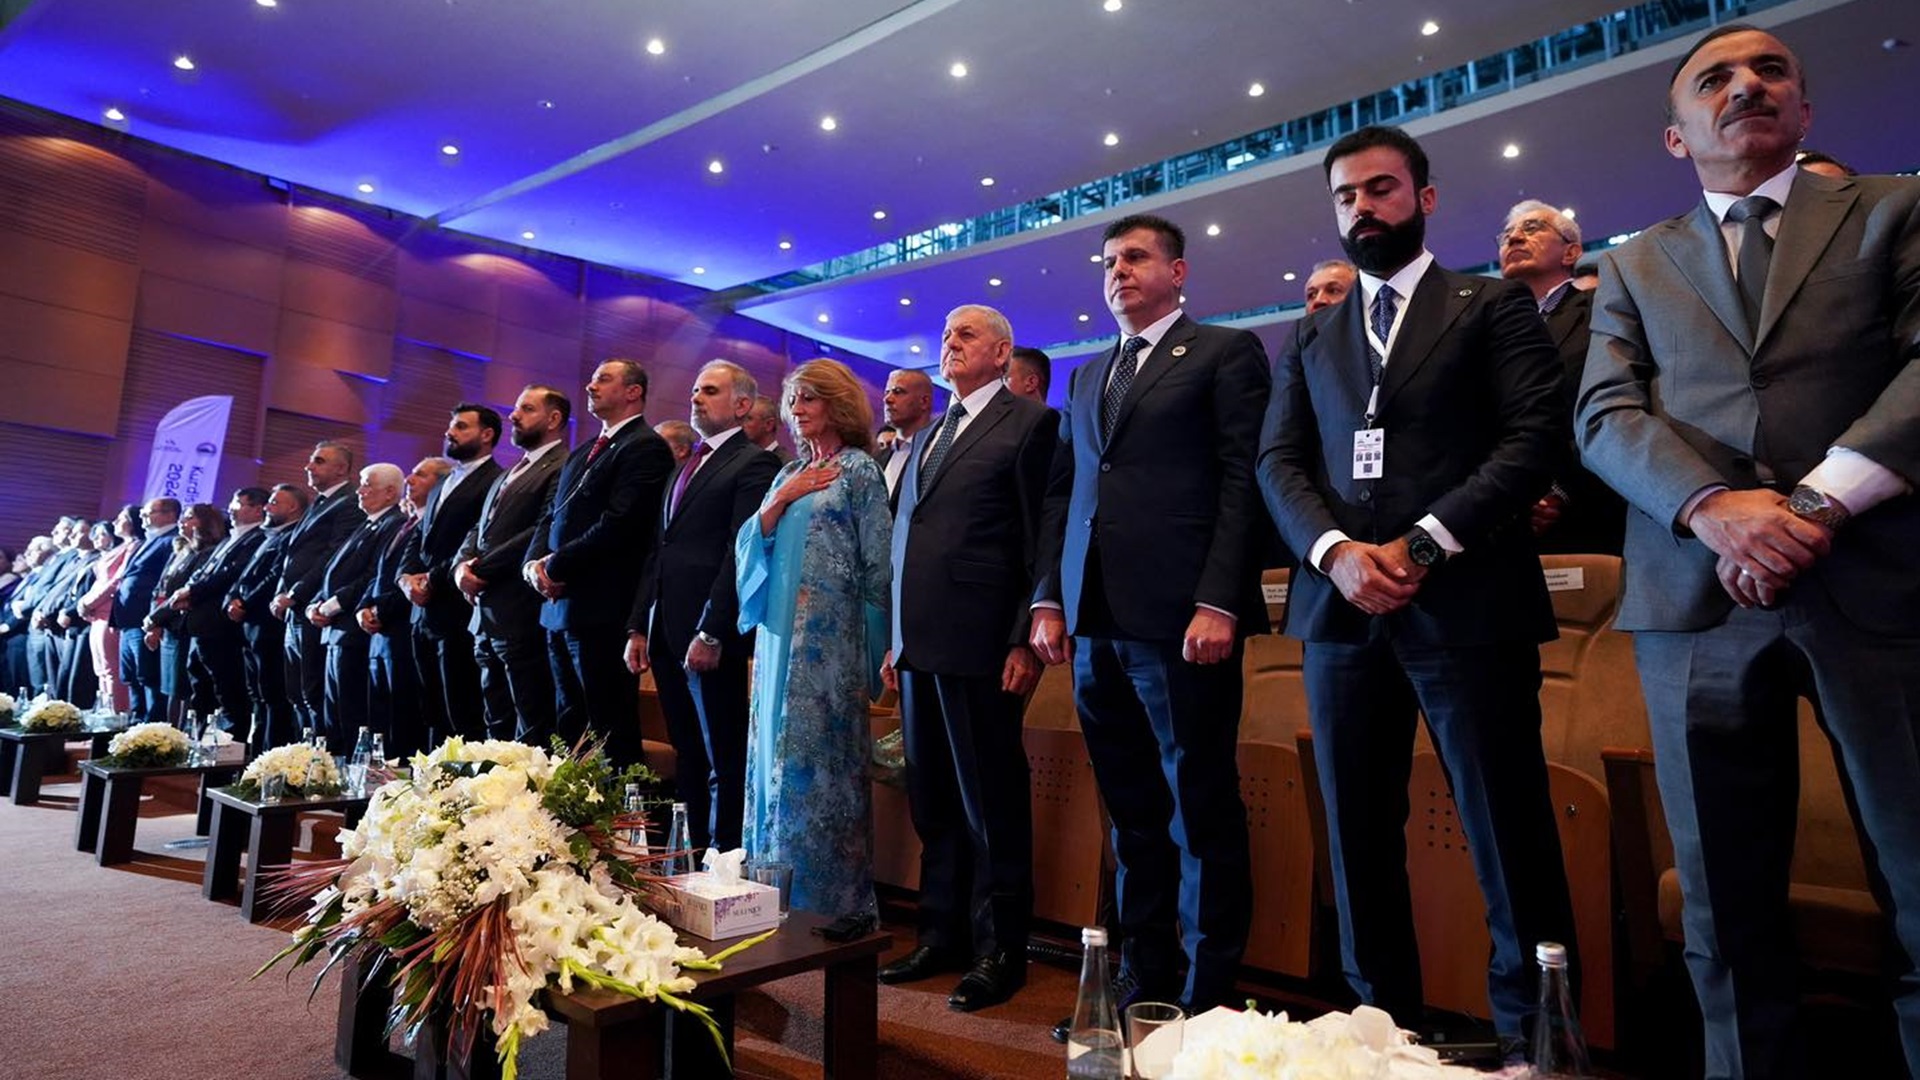  رئيس الجمهورية والسيدة الأولى في قمة صحة كوردستان الثالثة بالسليمانية